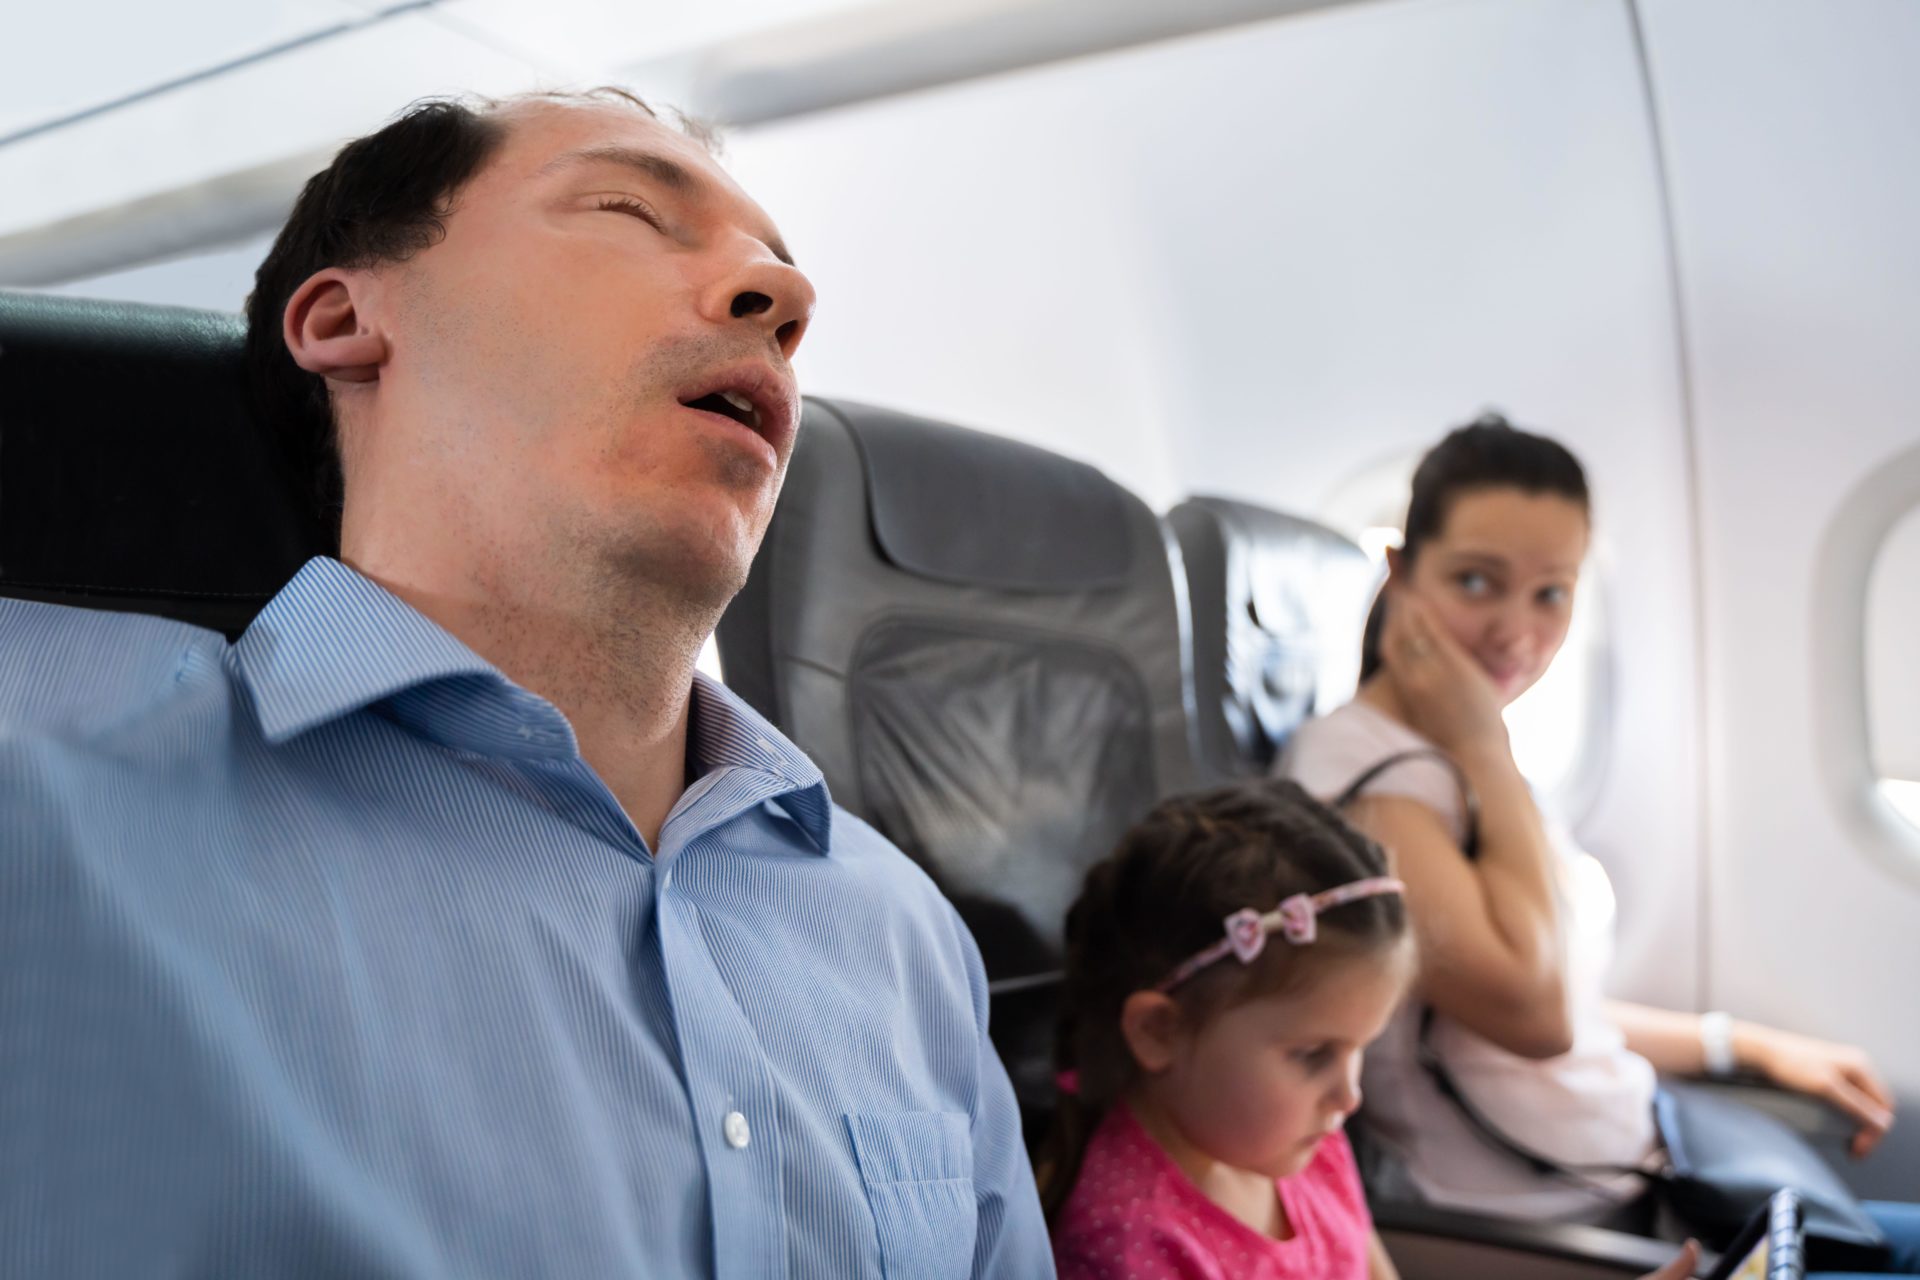 Man snoring loudly on plane